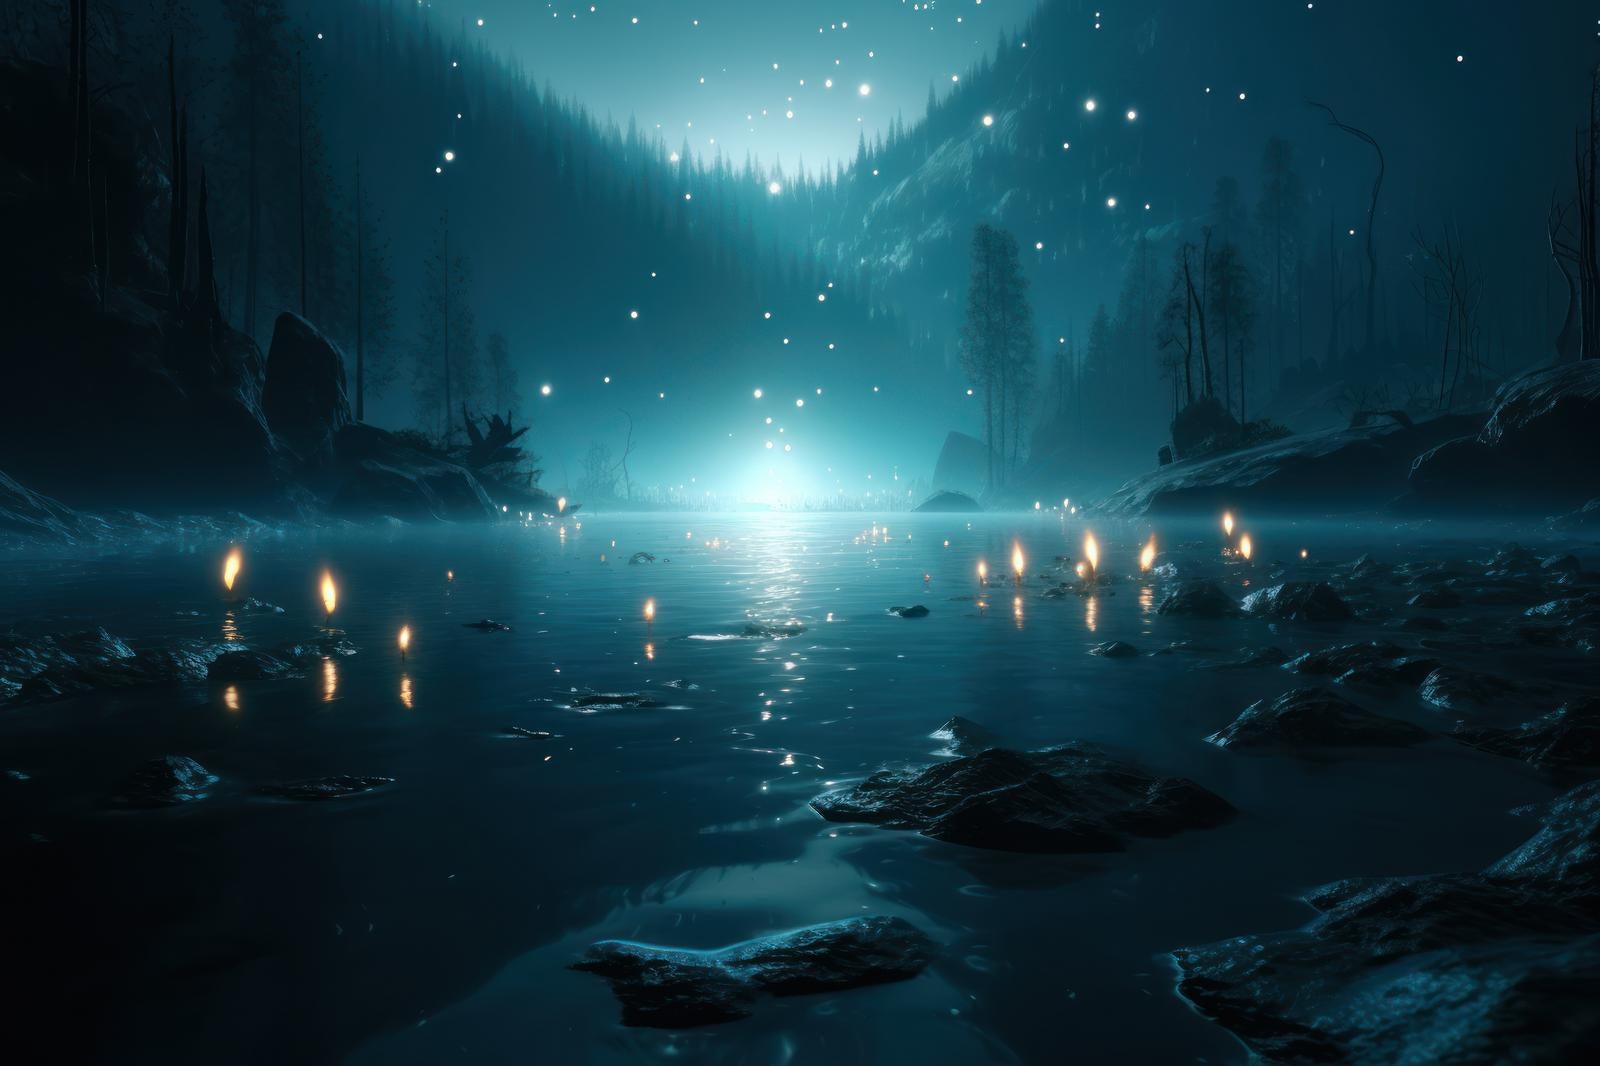 「静寂な夜に囁く湖面に揺れる灯火」の写真